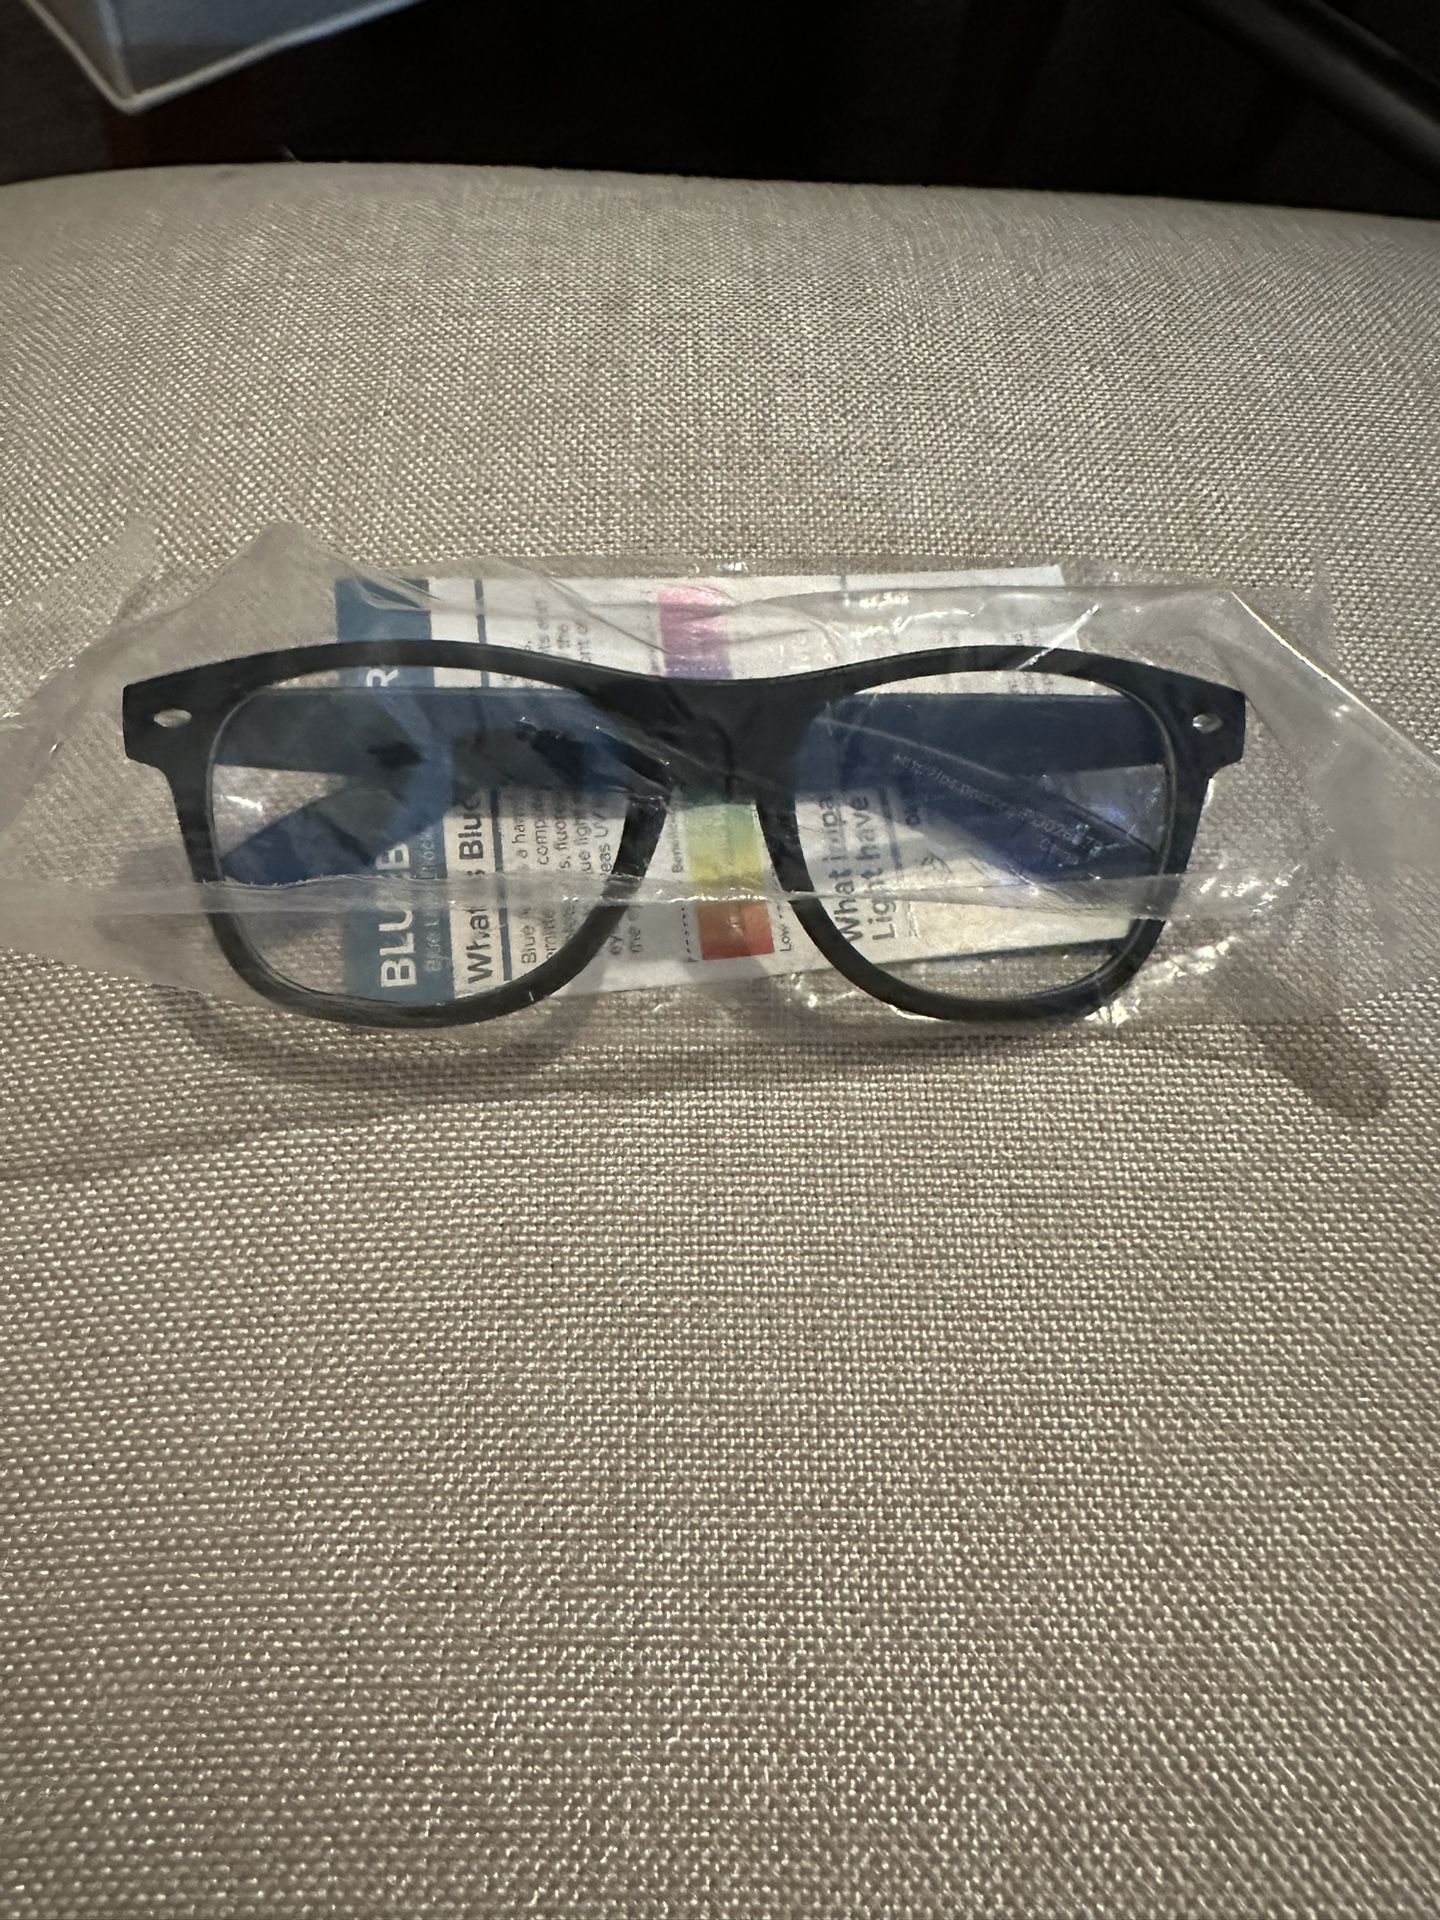 Microsoft Blue light Blocker Glasses